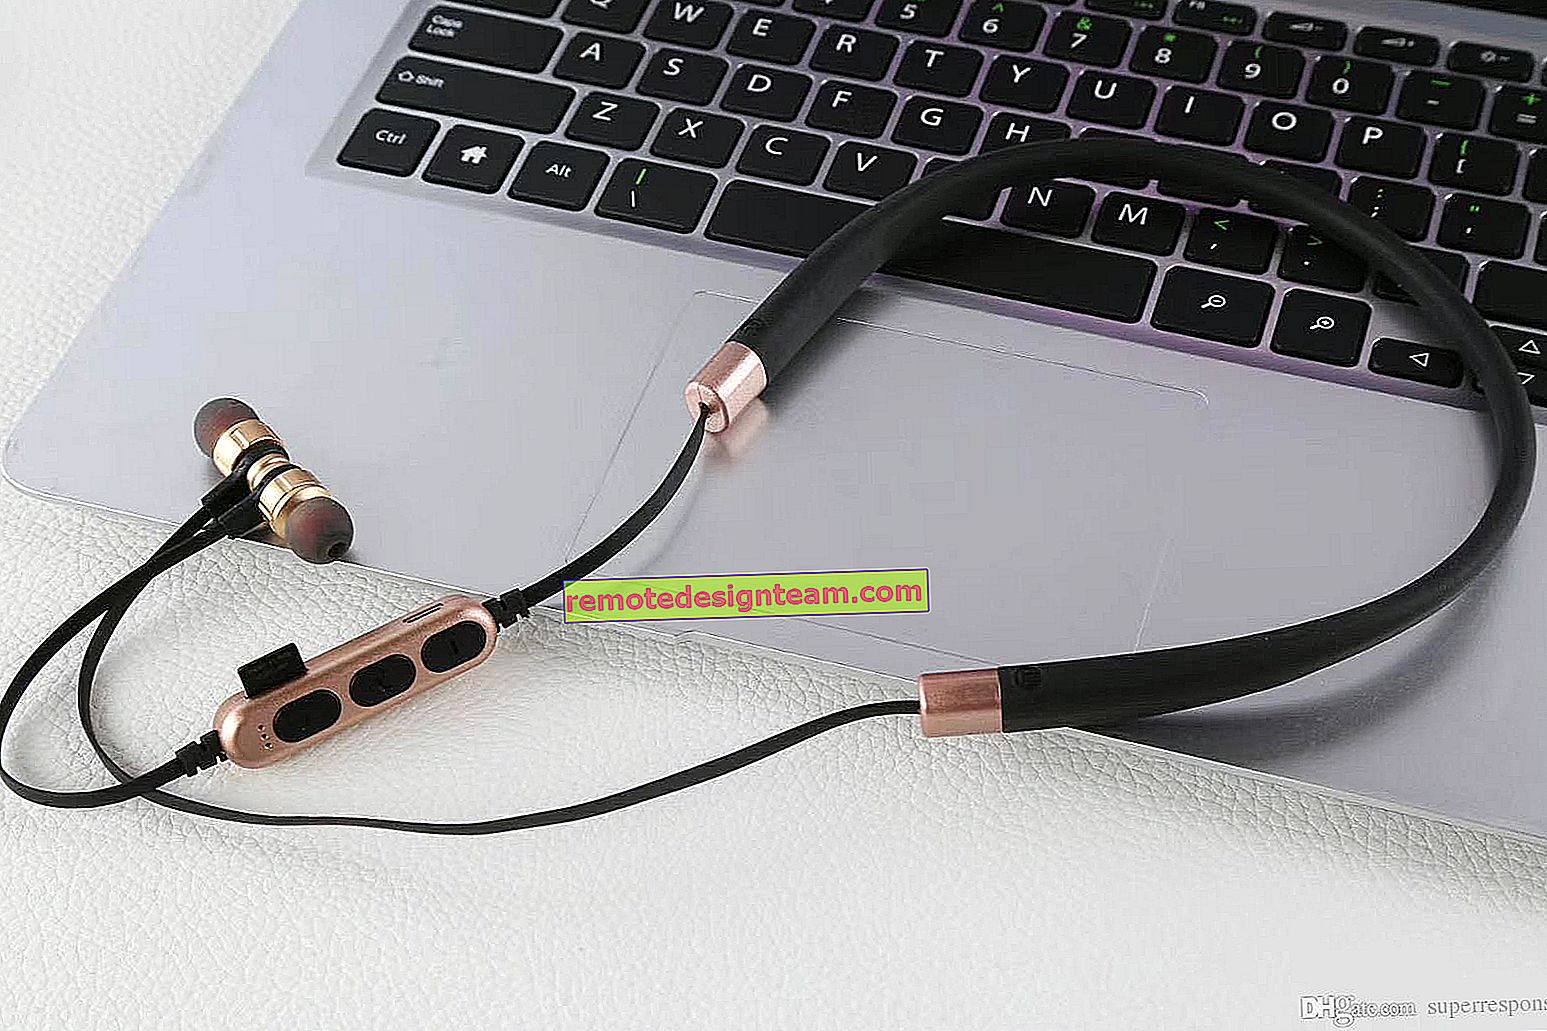 Kablosuz Bluetooth kulaklıkları TV'nize nasıl bağlayabilirsiniz?